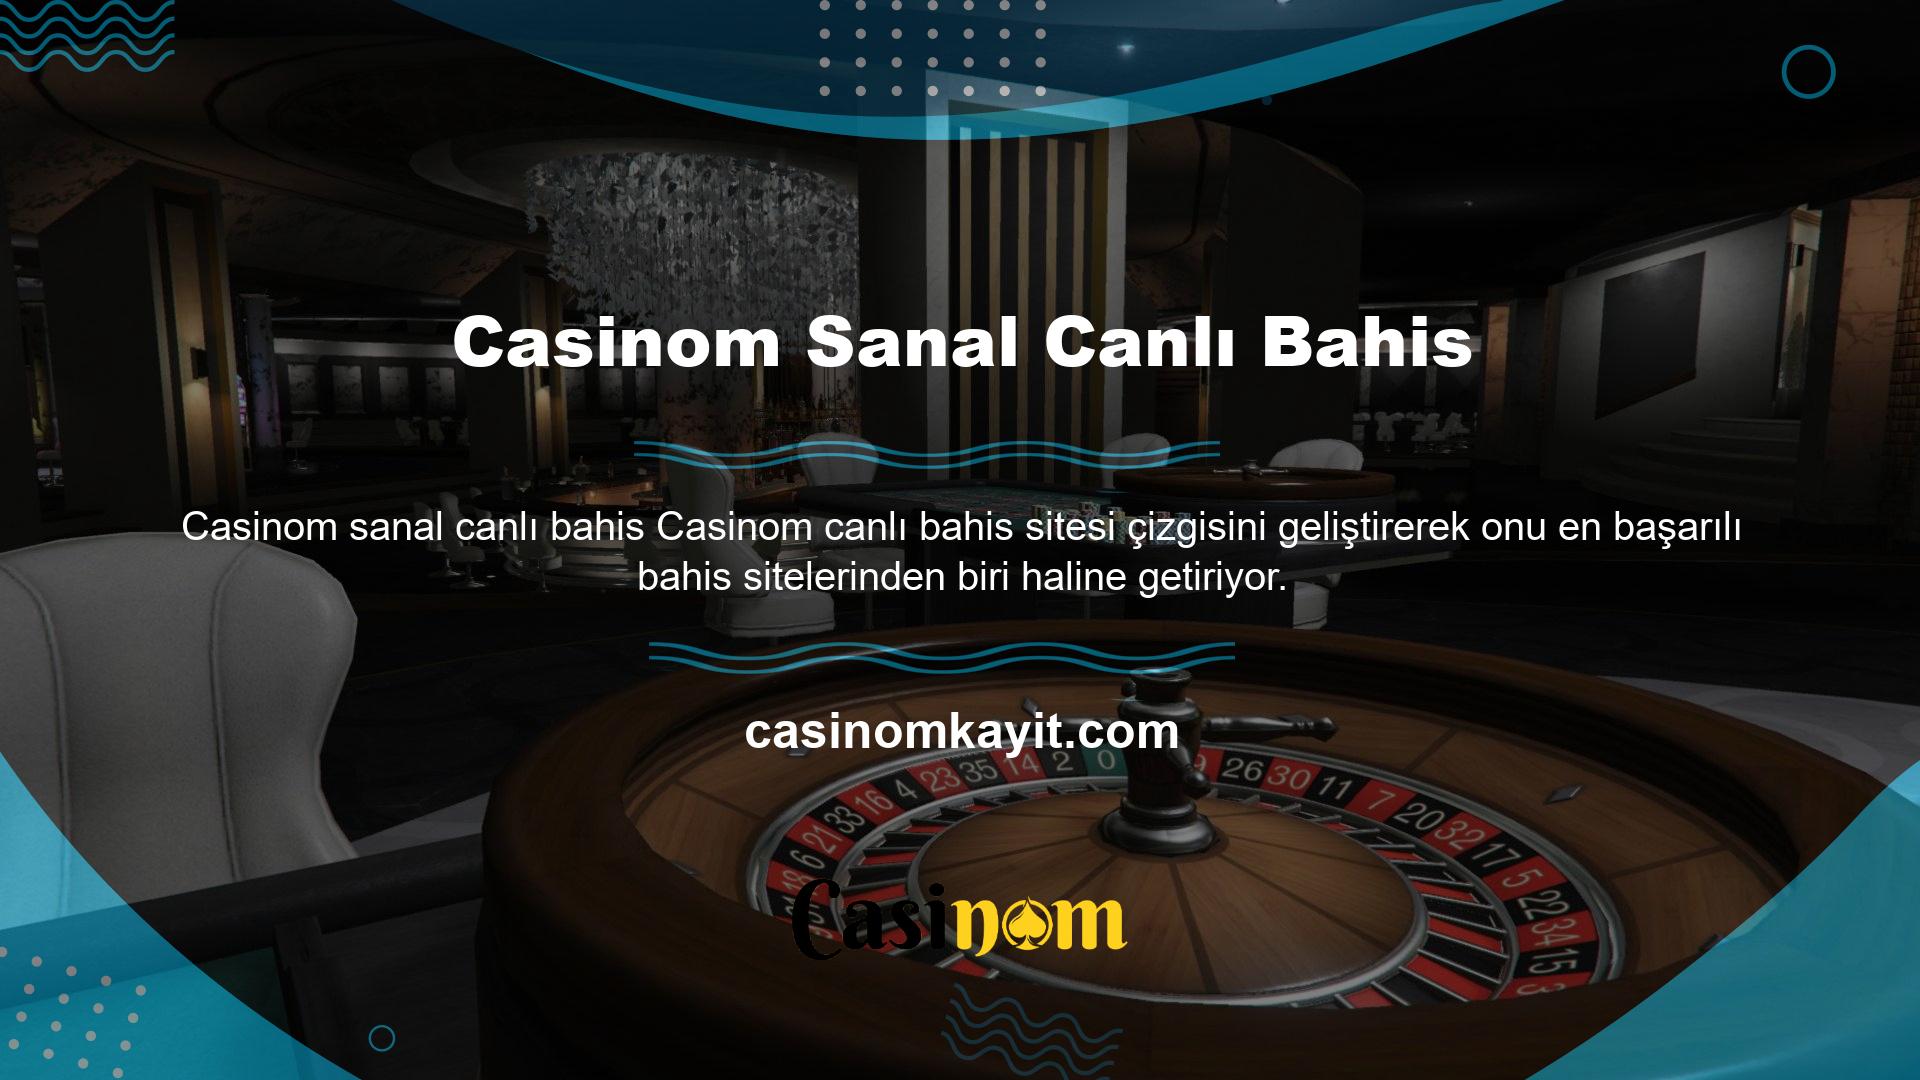 Casinom Canlı Bahis Sitesi canlı casinolar, sanal bahis oyunları, spor bahisleri, at yarışı ve poker gibi hizmetler sunmaktadır